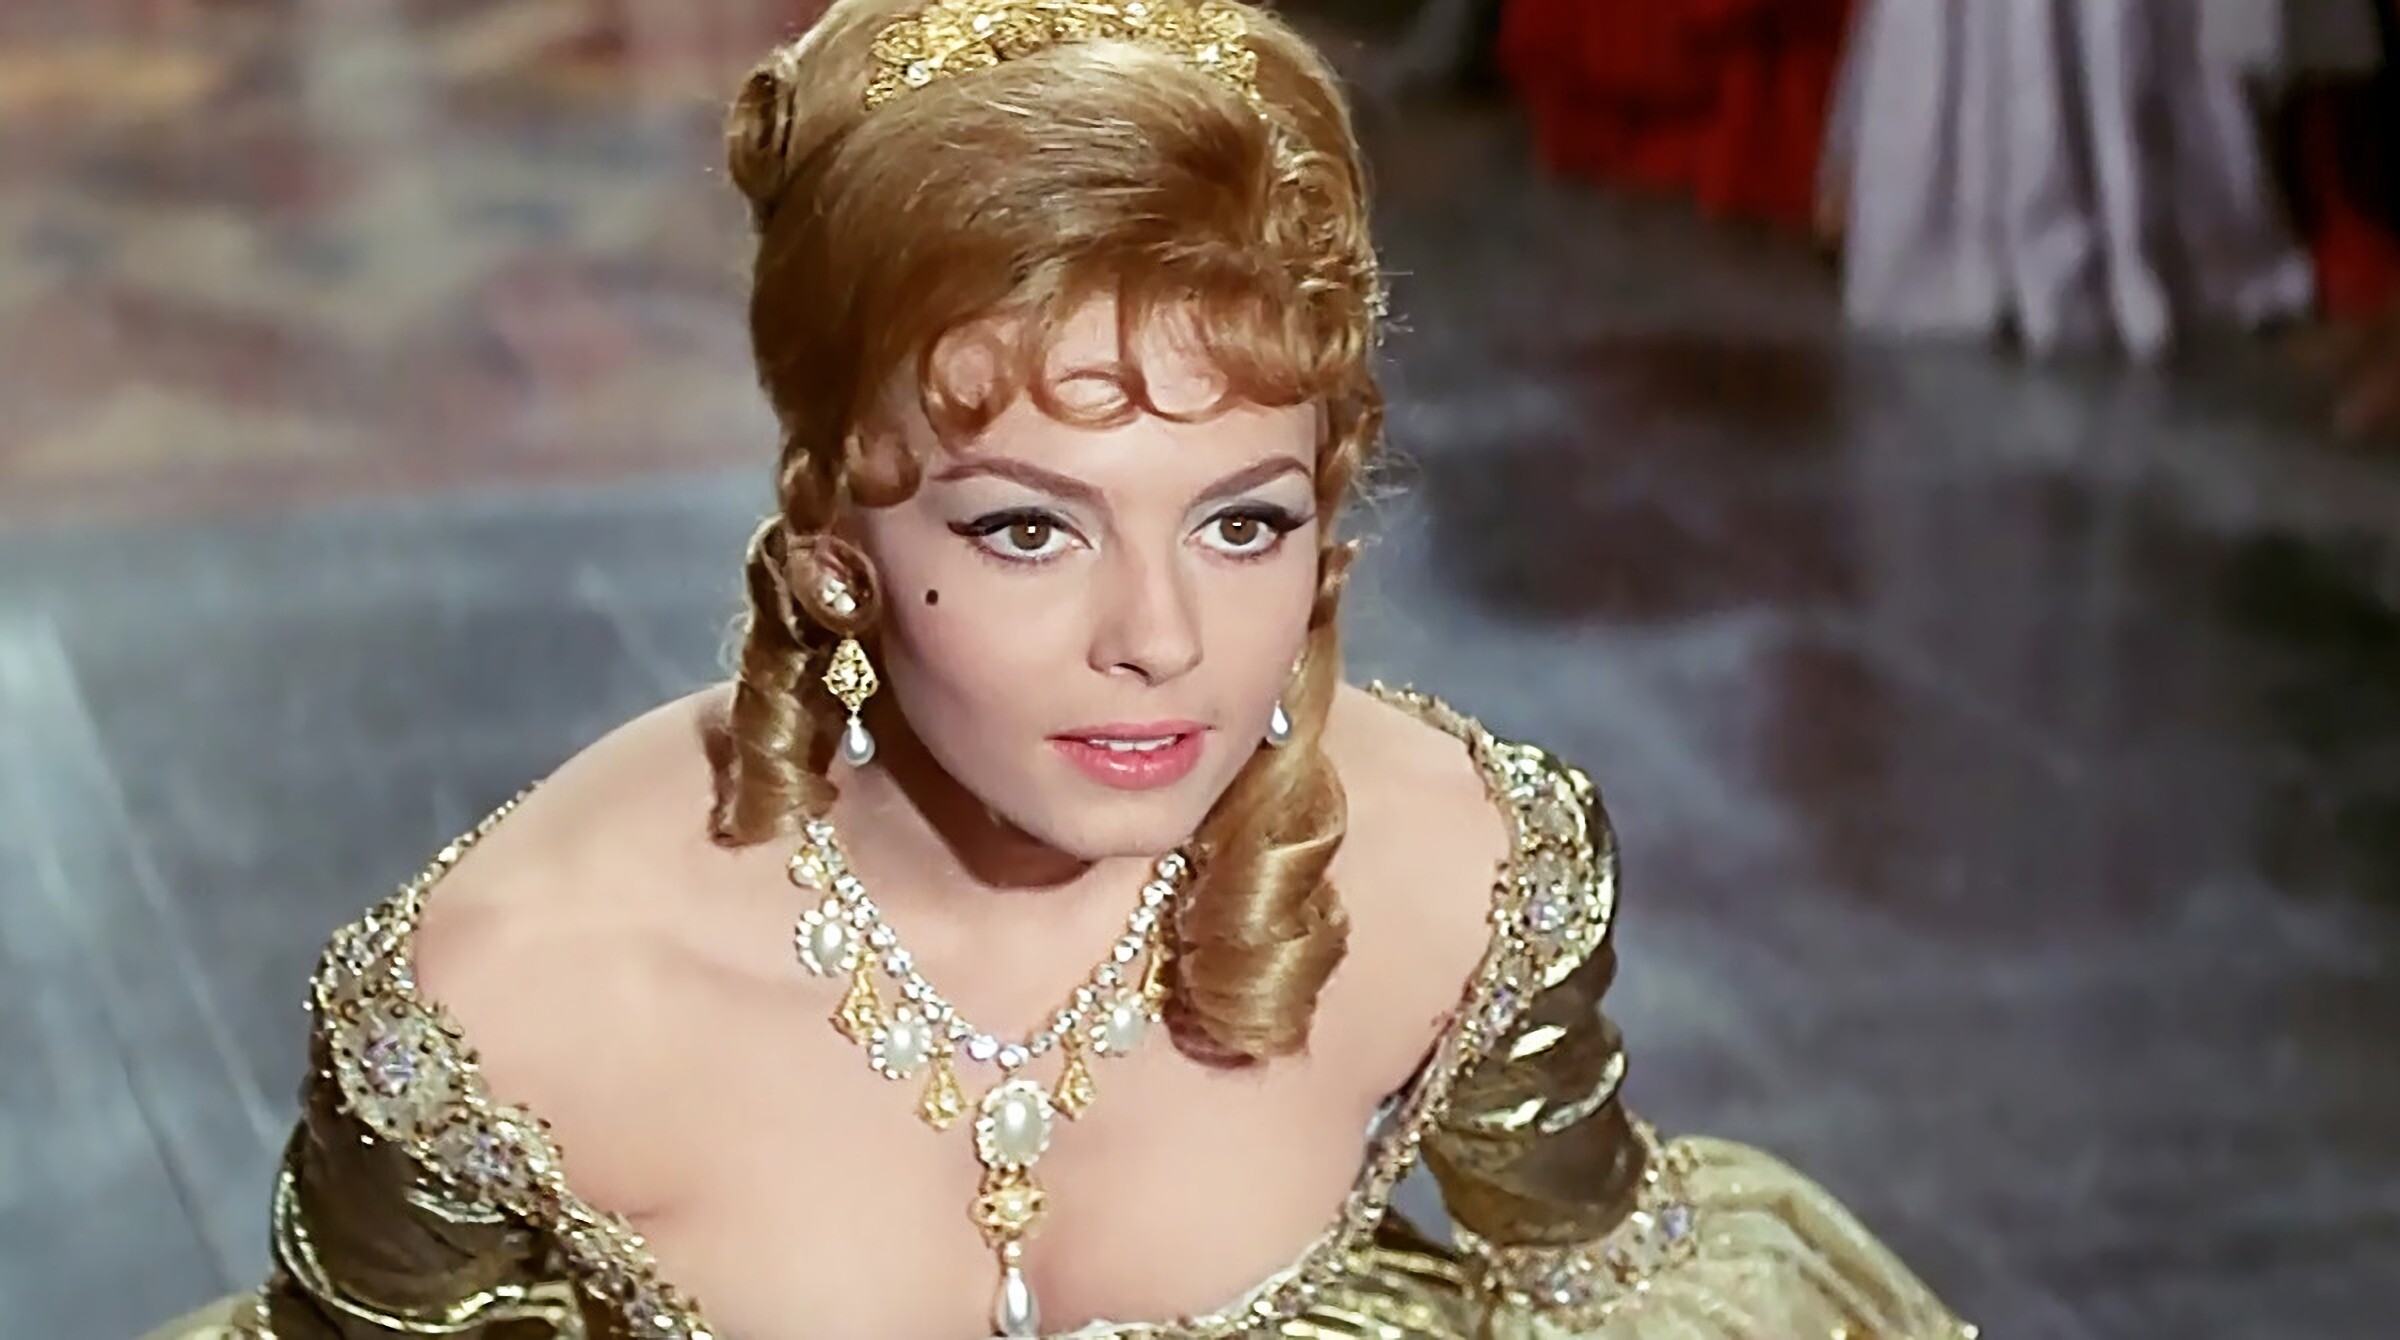 Angelique (1964), Forbidden love, French cinema, Exquisite costumes, 2400x1340 HD Desktop